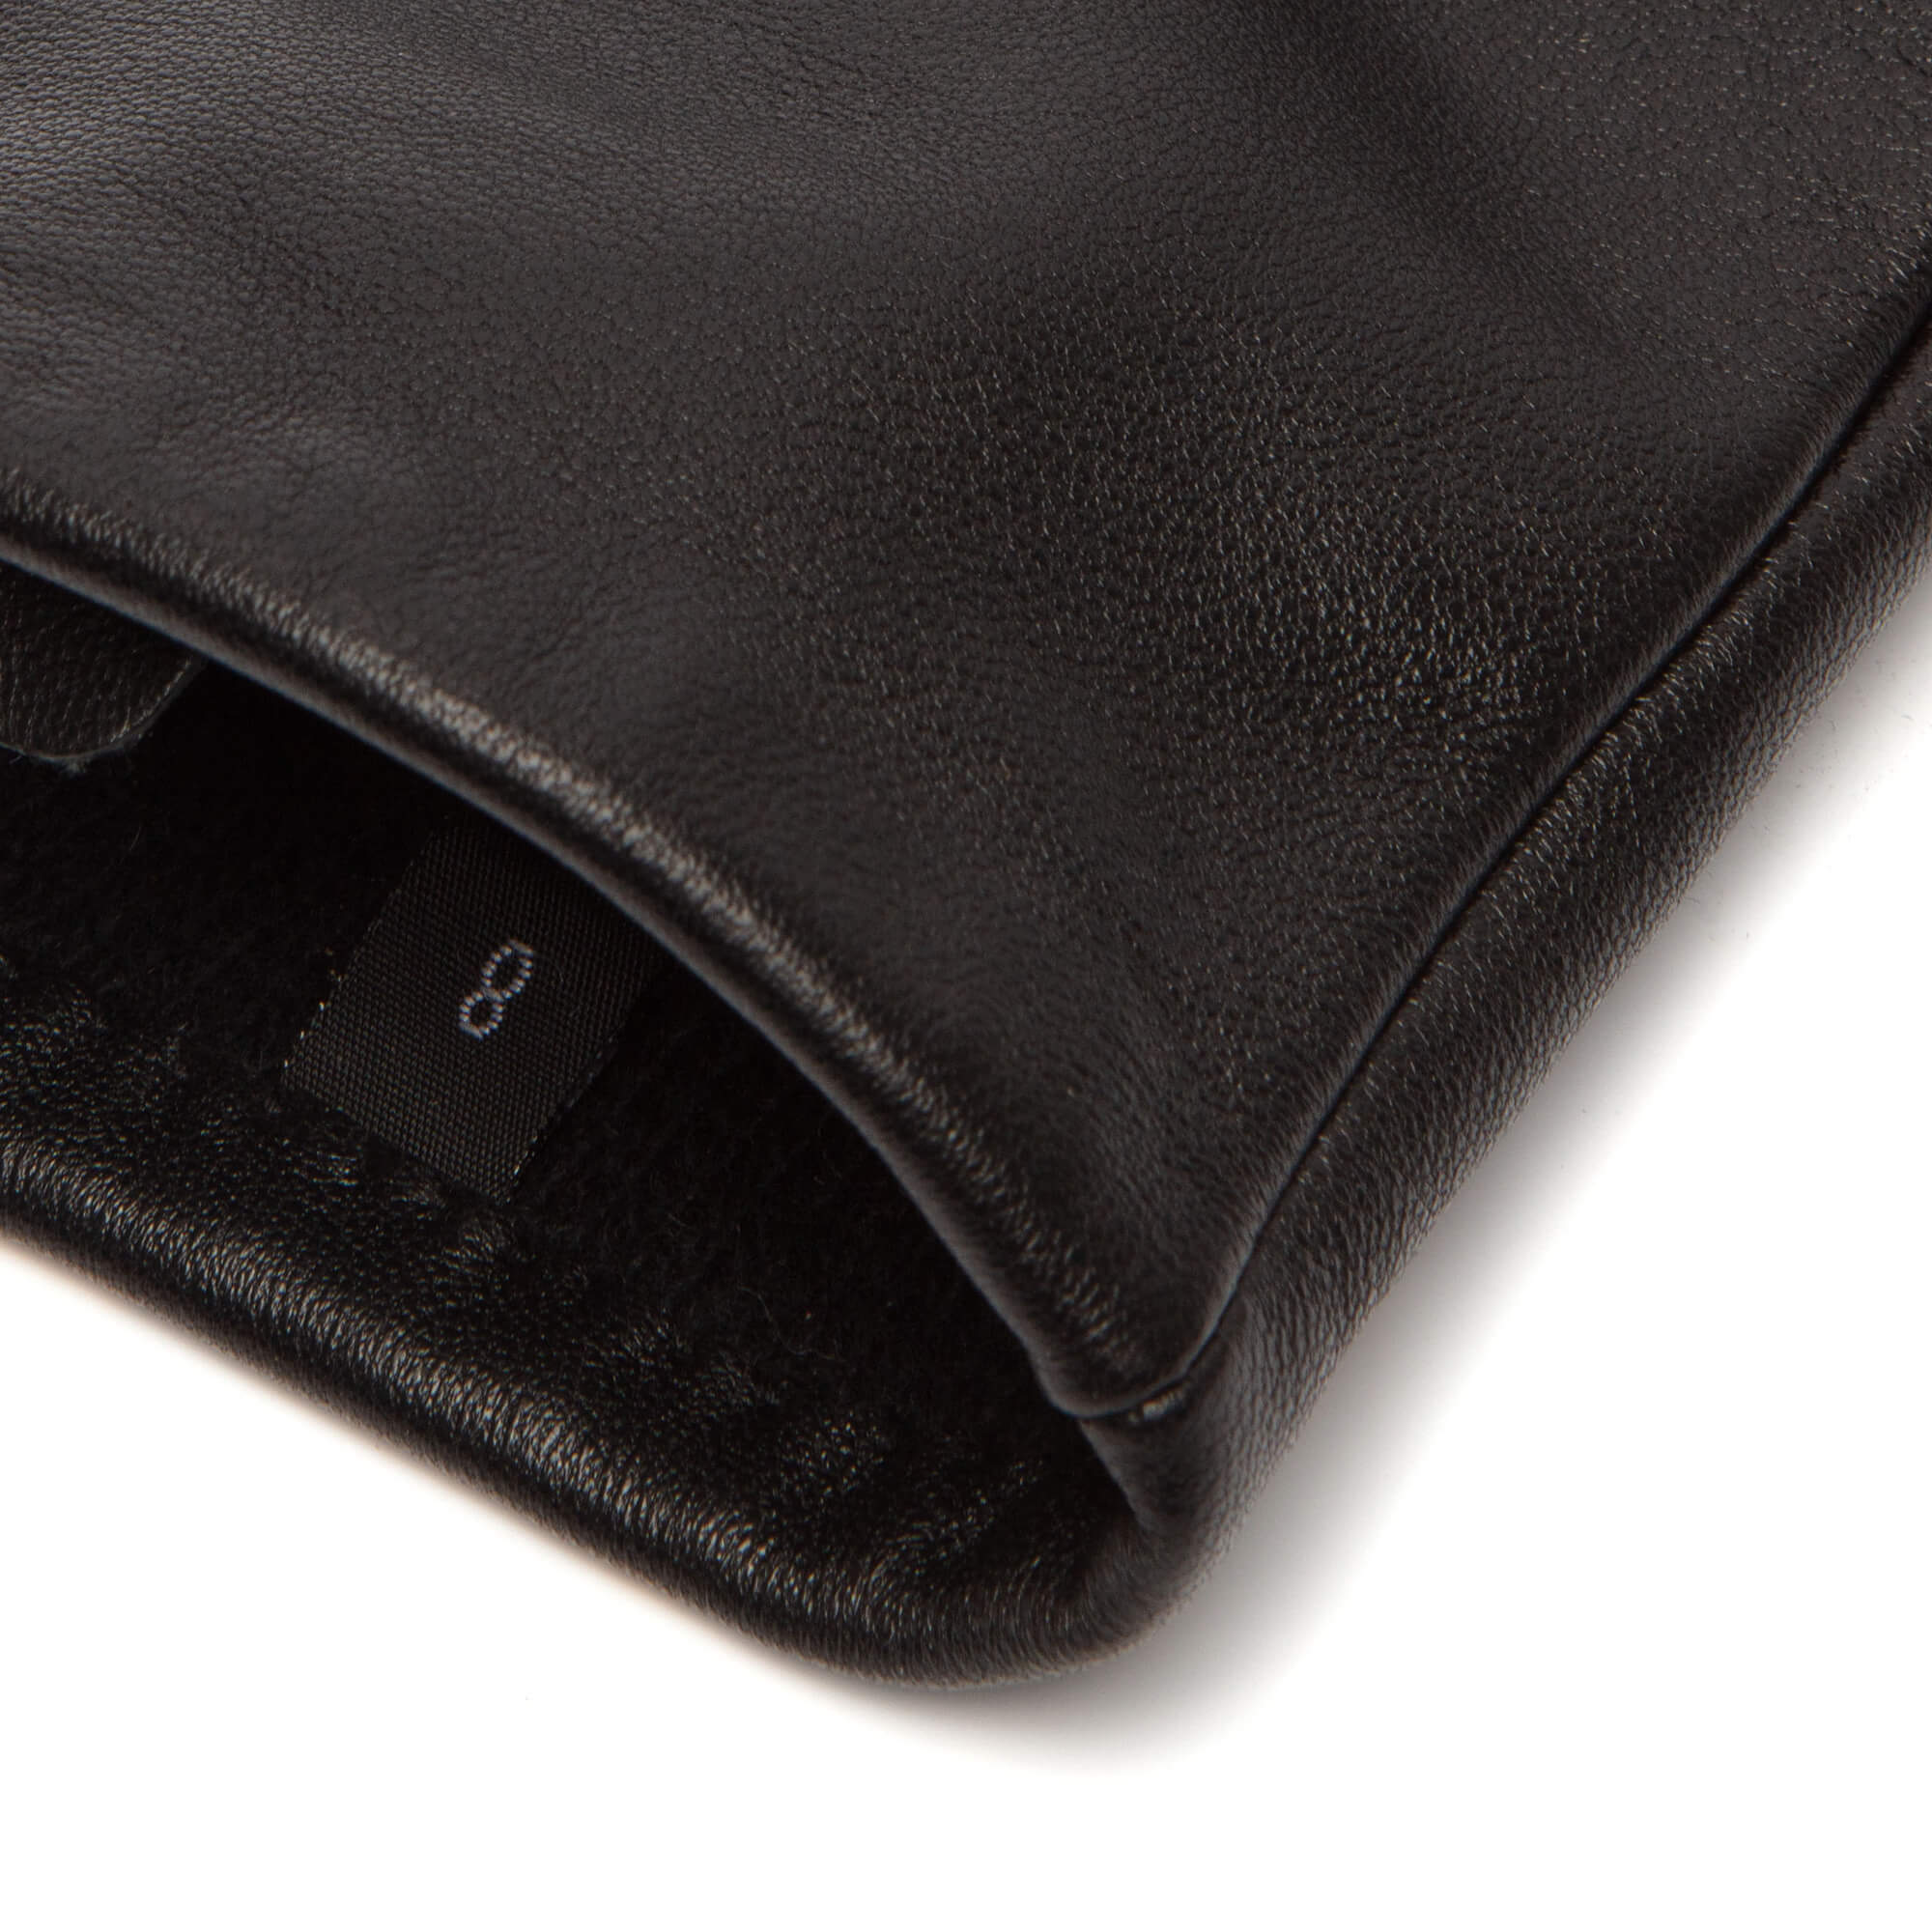 Gants femme noir en laine 65% doublés finition velours - Matière noble 9.90€